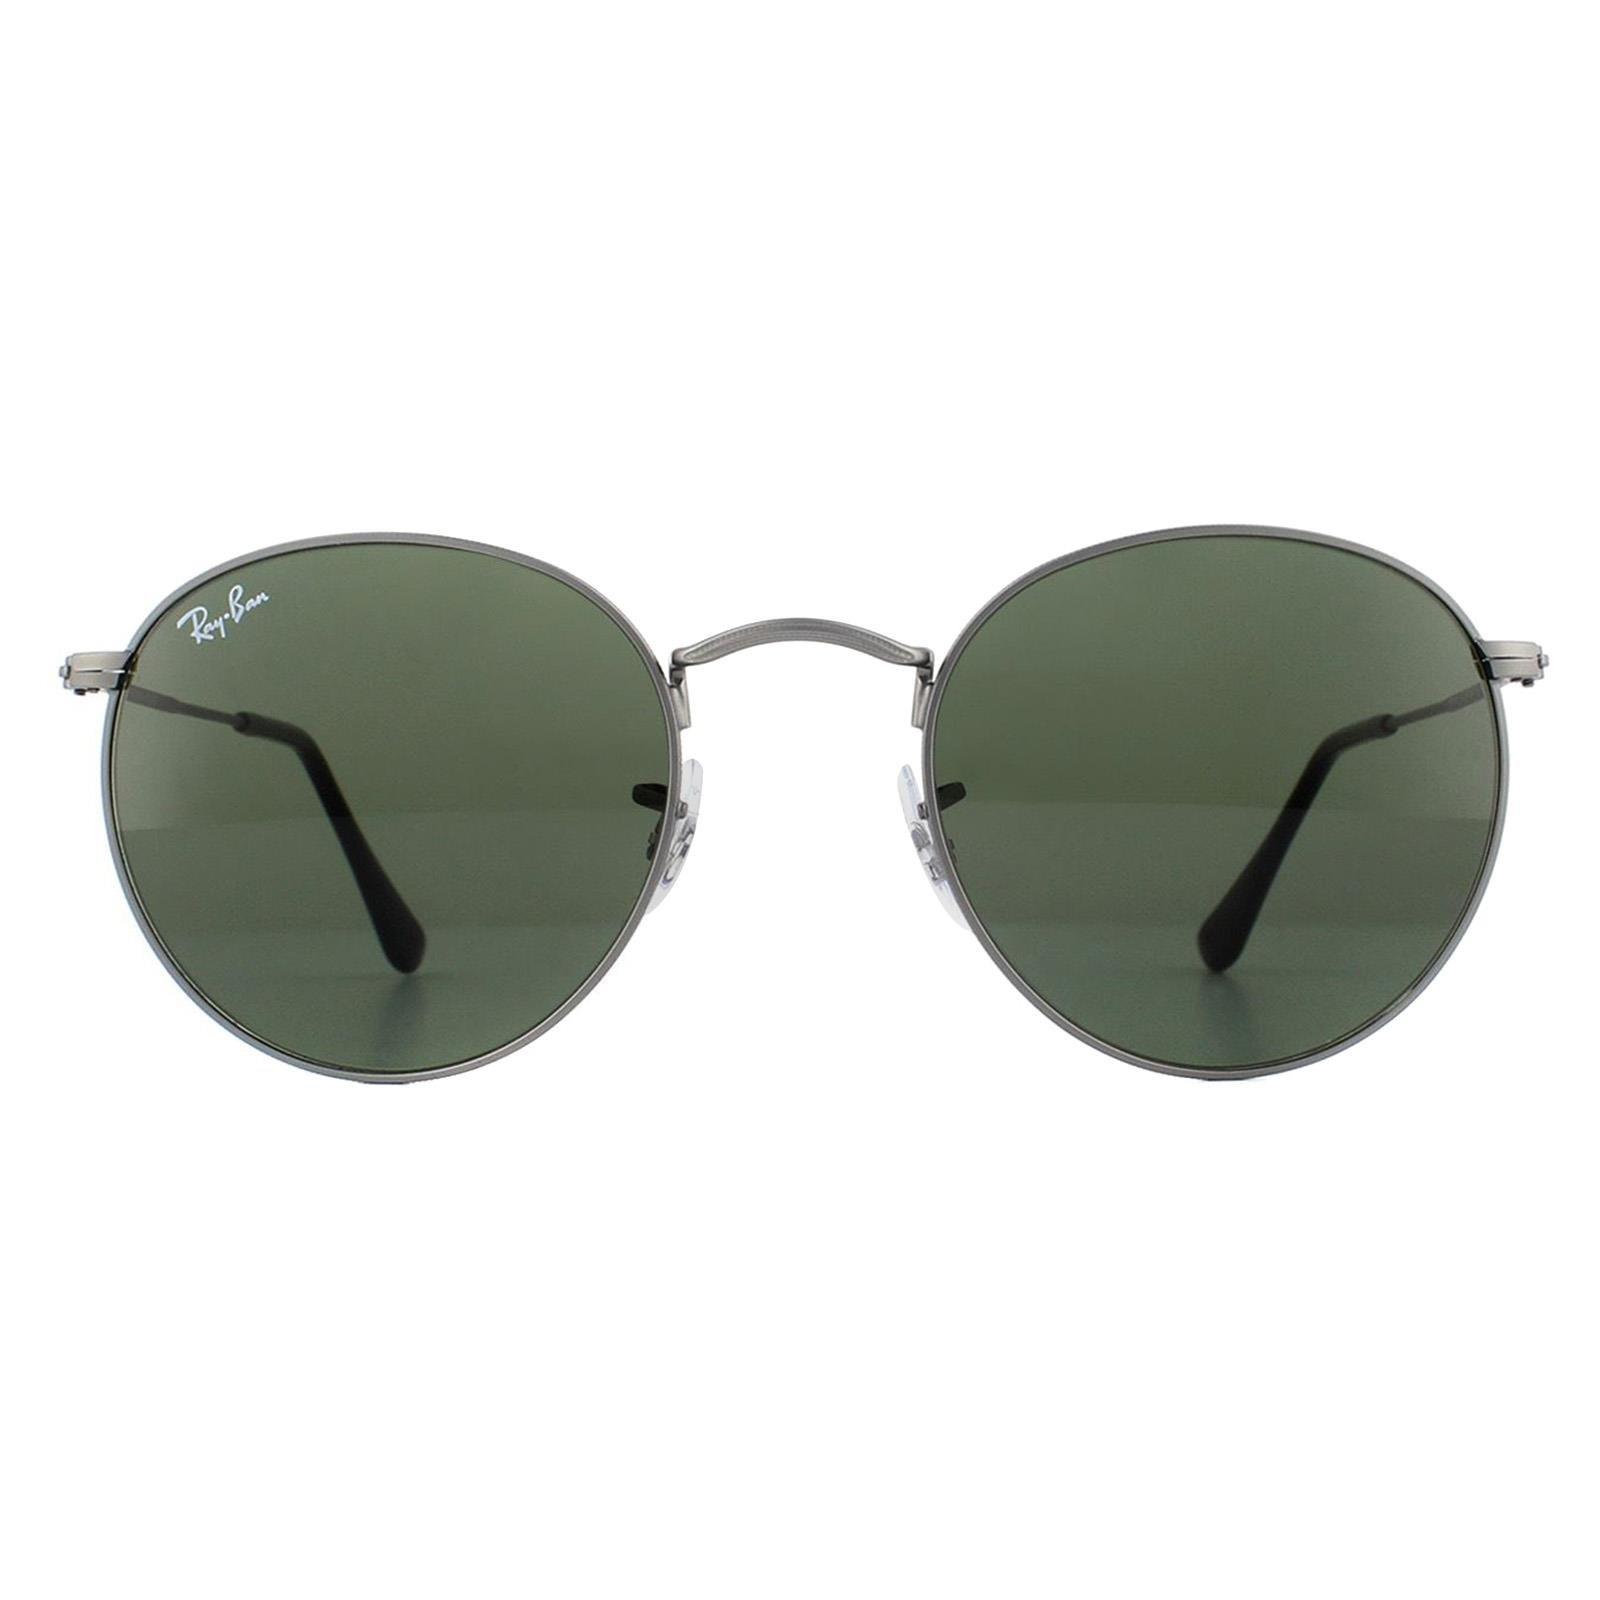 Круглые матовые зеленые солнцезащитные очки цвета бронзы Ray-Ban, серый стать джоном ленноном